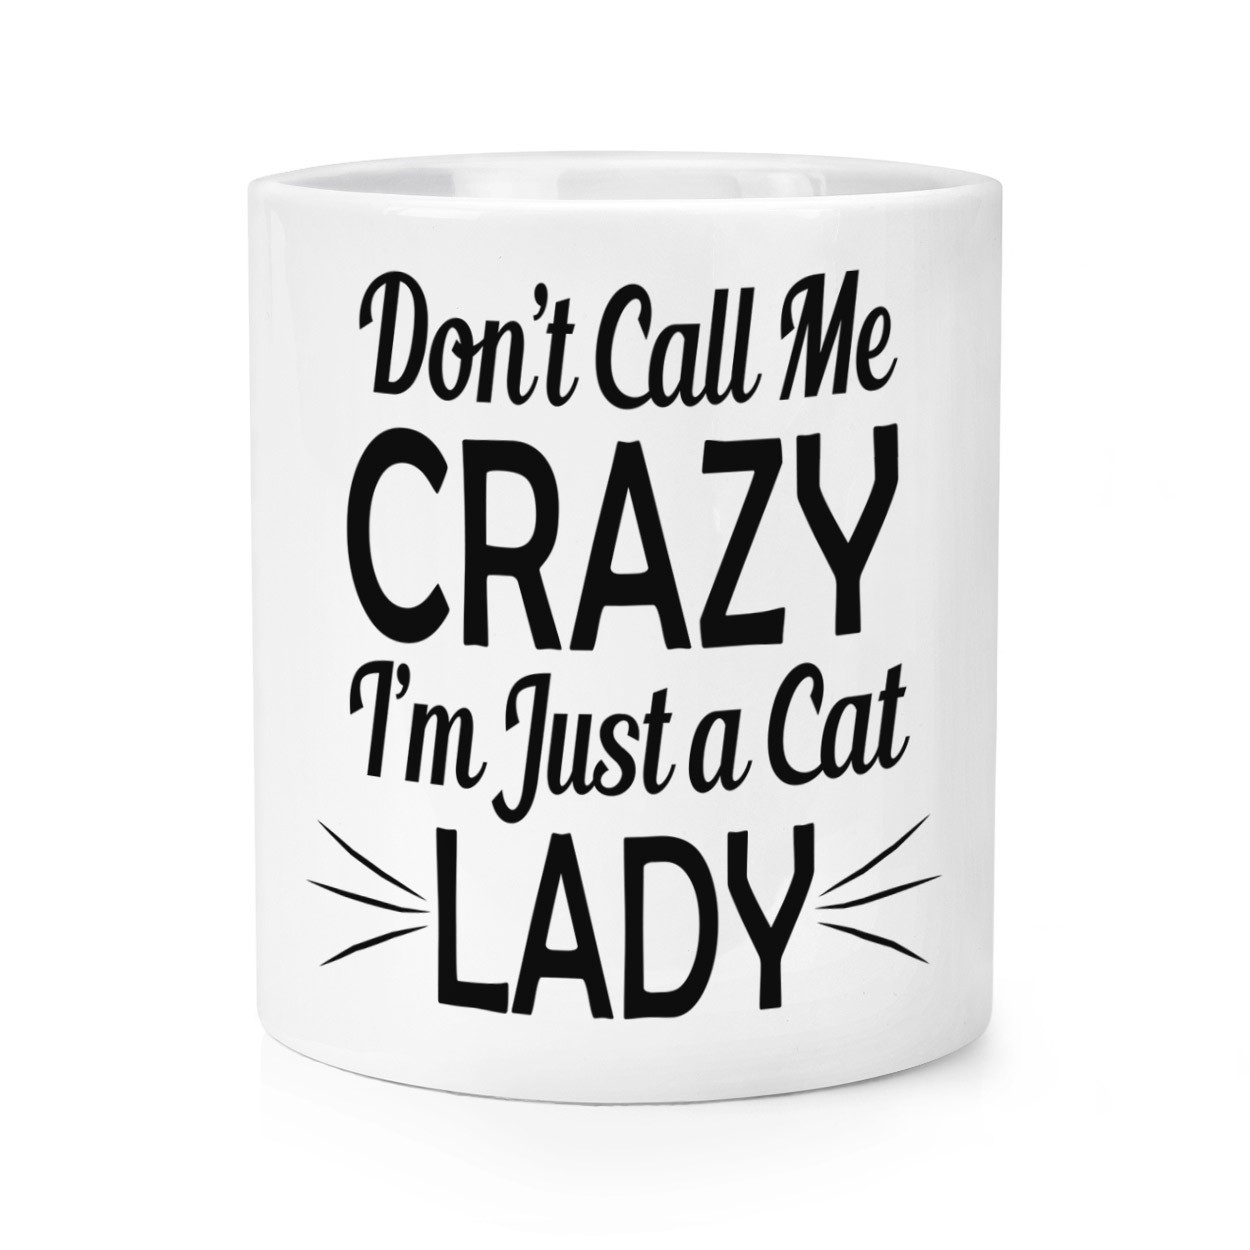 Don't Call Me Crazy I'm Just A Cat Lady Makeup Brush Pencil Pot